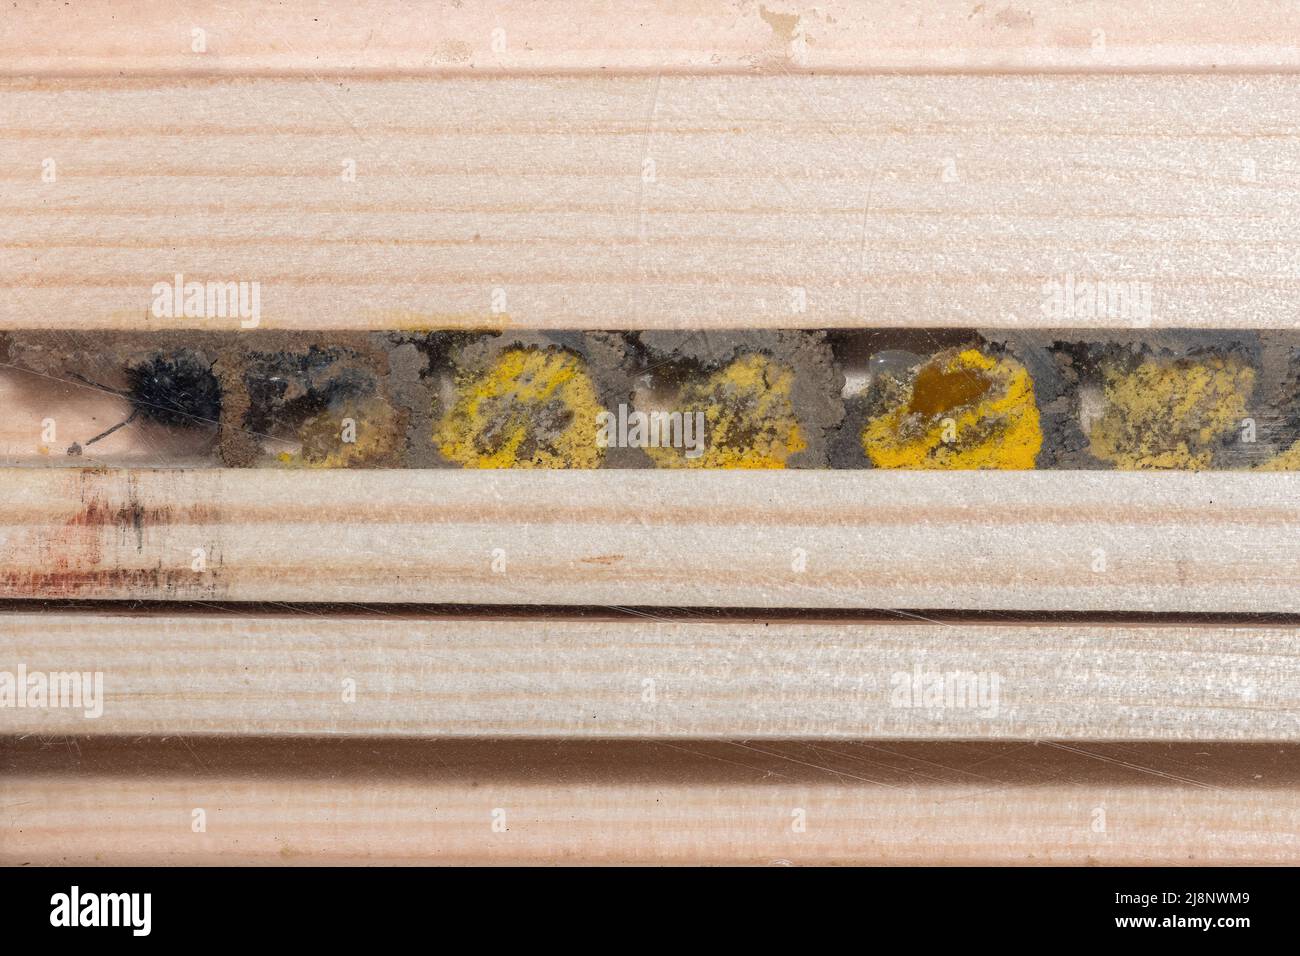 Abeille rouge (Osmia bicornis) à l'intérieur d'un hôtel d'abeilles montrant les cellules reproductrices remplies de pollen et les œufs divisés par des murs de boue, Royaume-Uni Banque D'Images